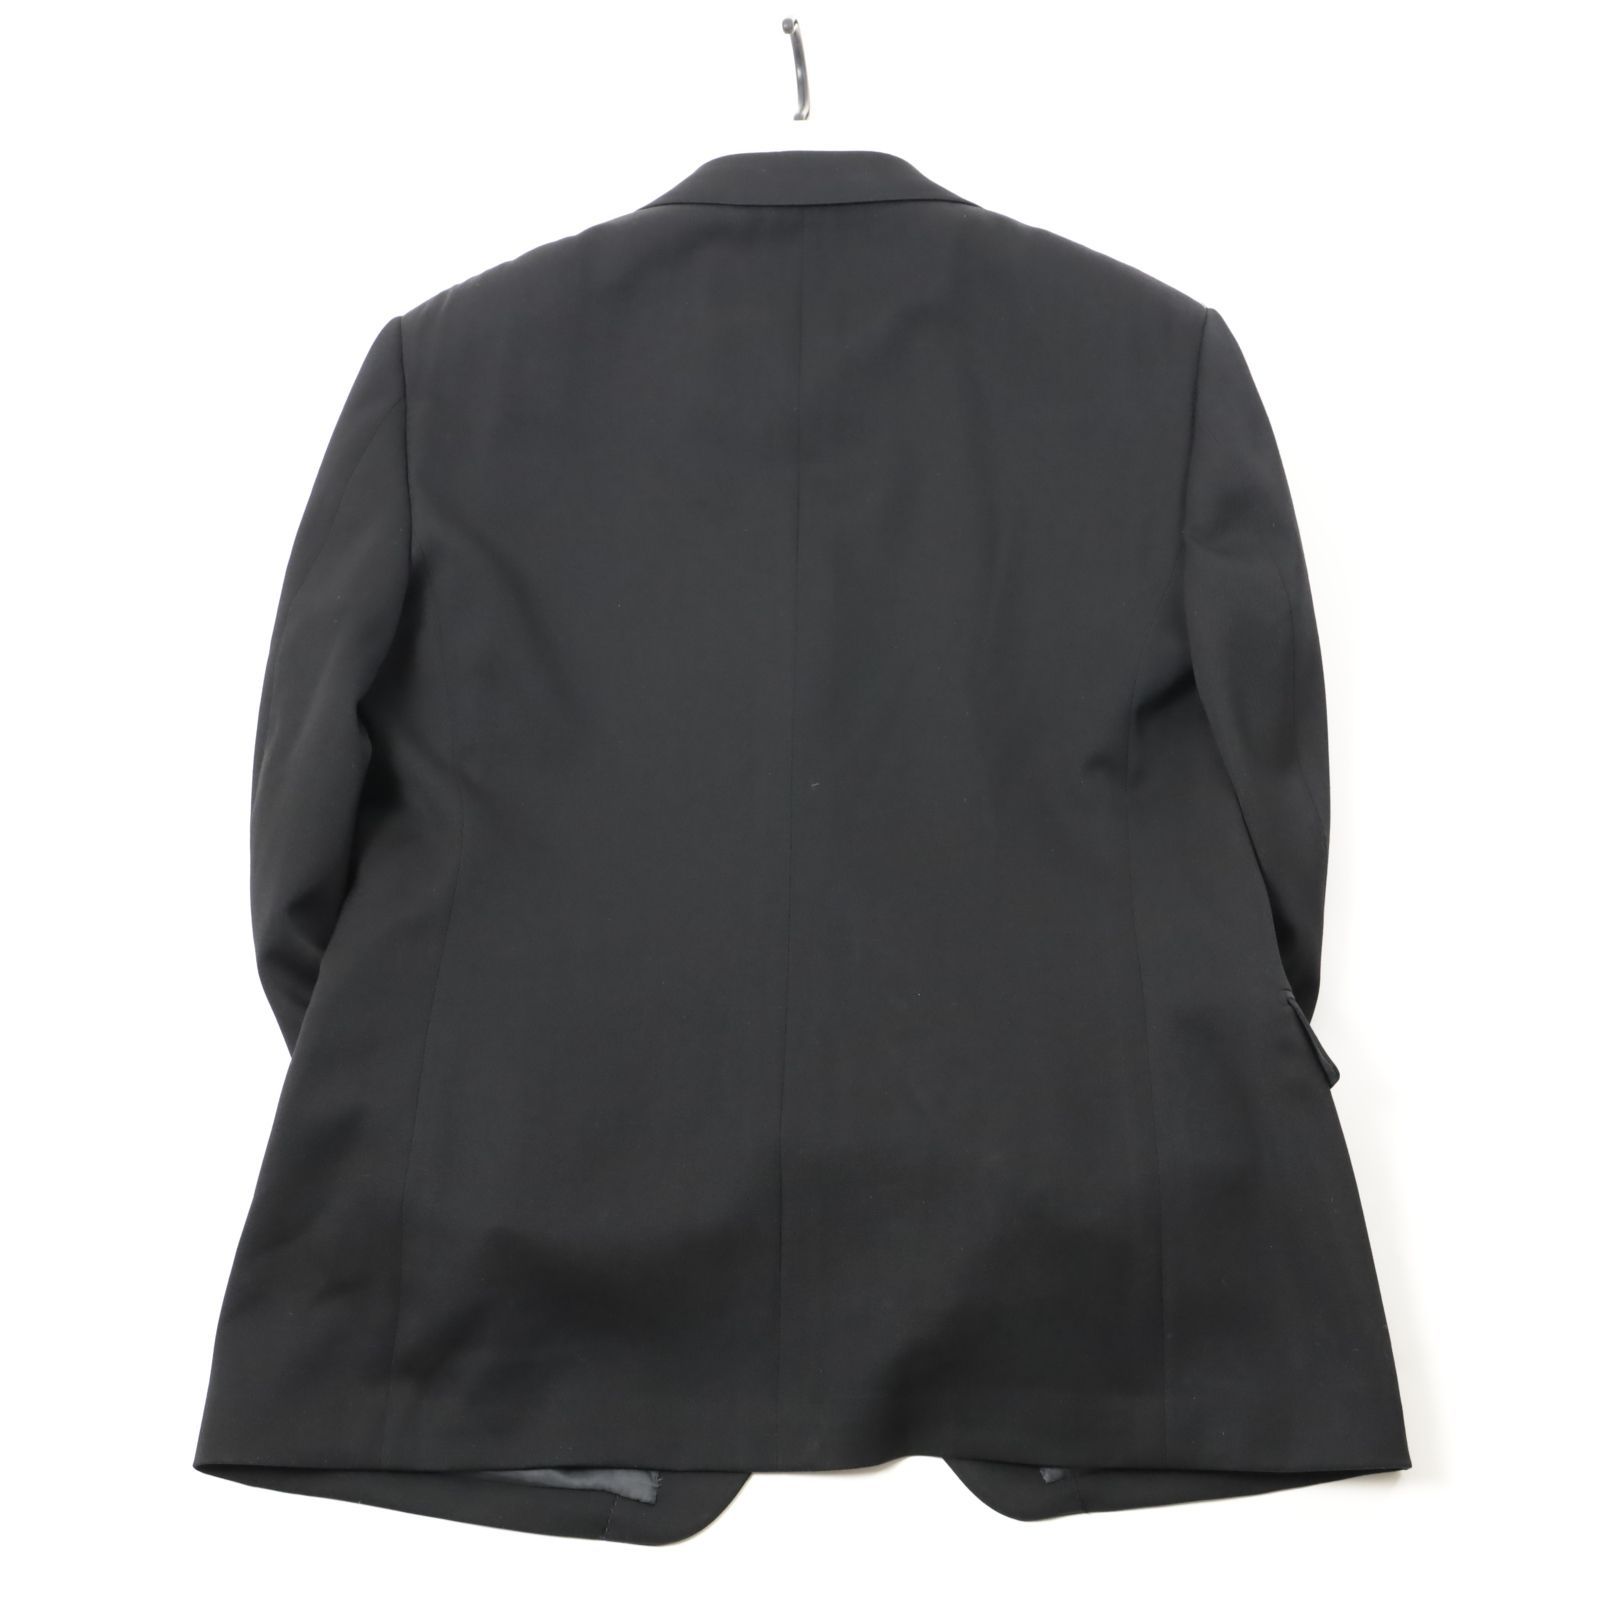 新品 五大陸 WEAR BLACK フォーマル 礼服 ブラックスーツ メンズ ウール BB6 定価7.5万 -725